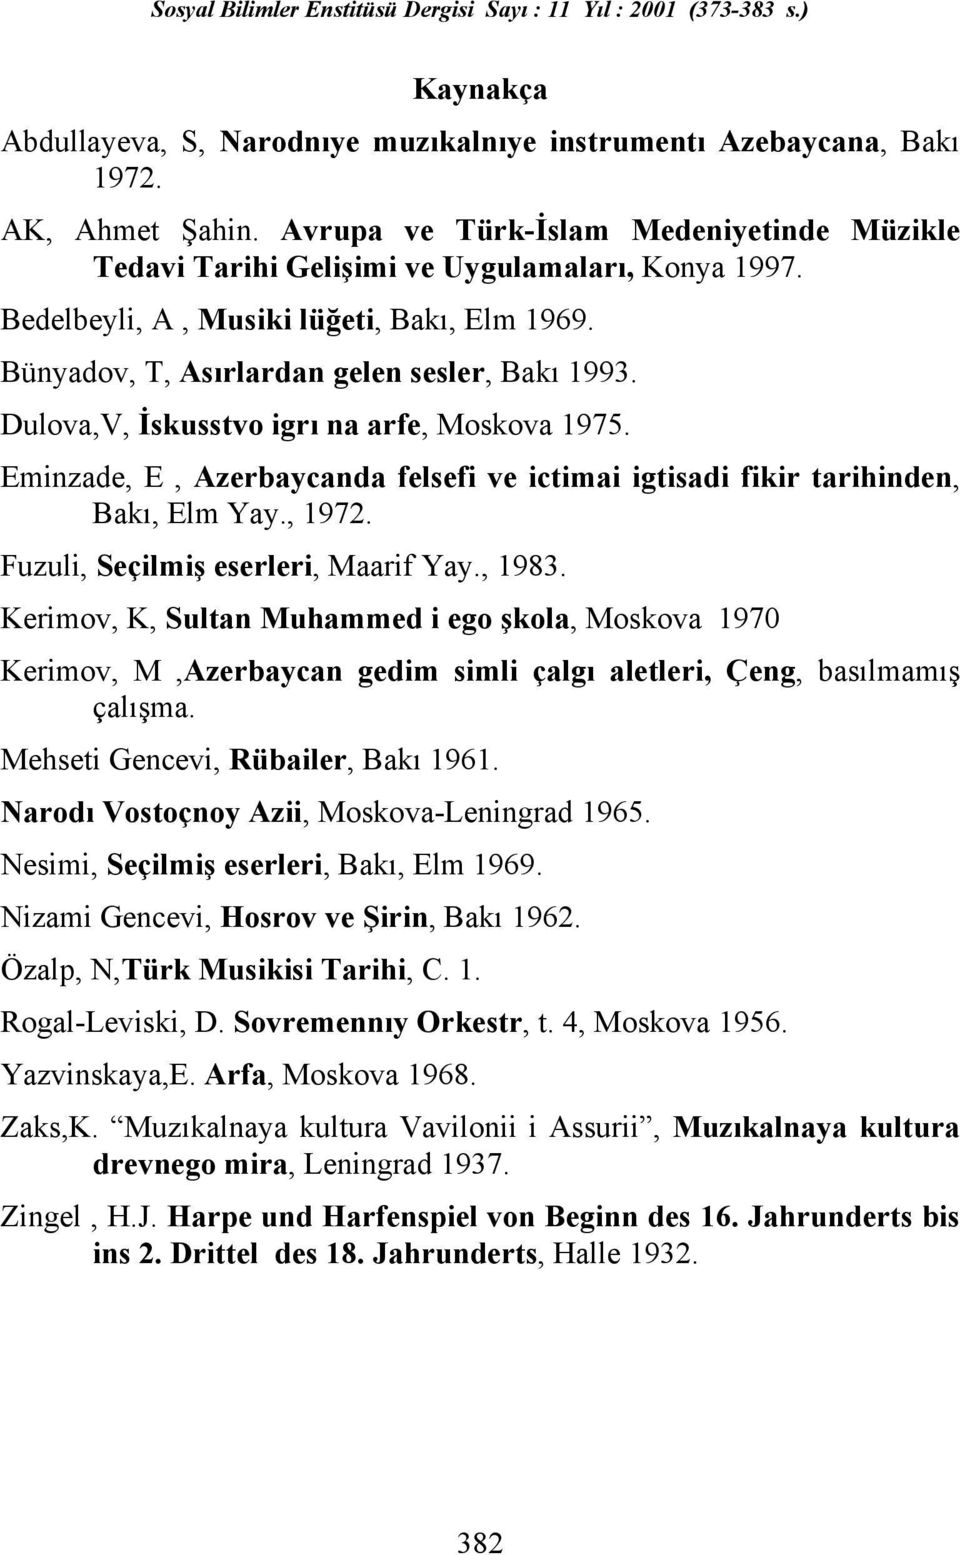 Eminzade, E, Azerbaycanda felsefi ve ictimai igtisadi fikir tarihinden, Bakõ, Elm Yay., 1972. Fuzuli, Seçilmiş eserleri, Maarif Yay., 1983.